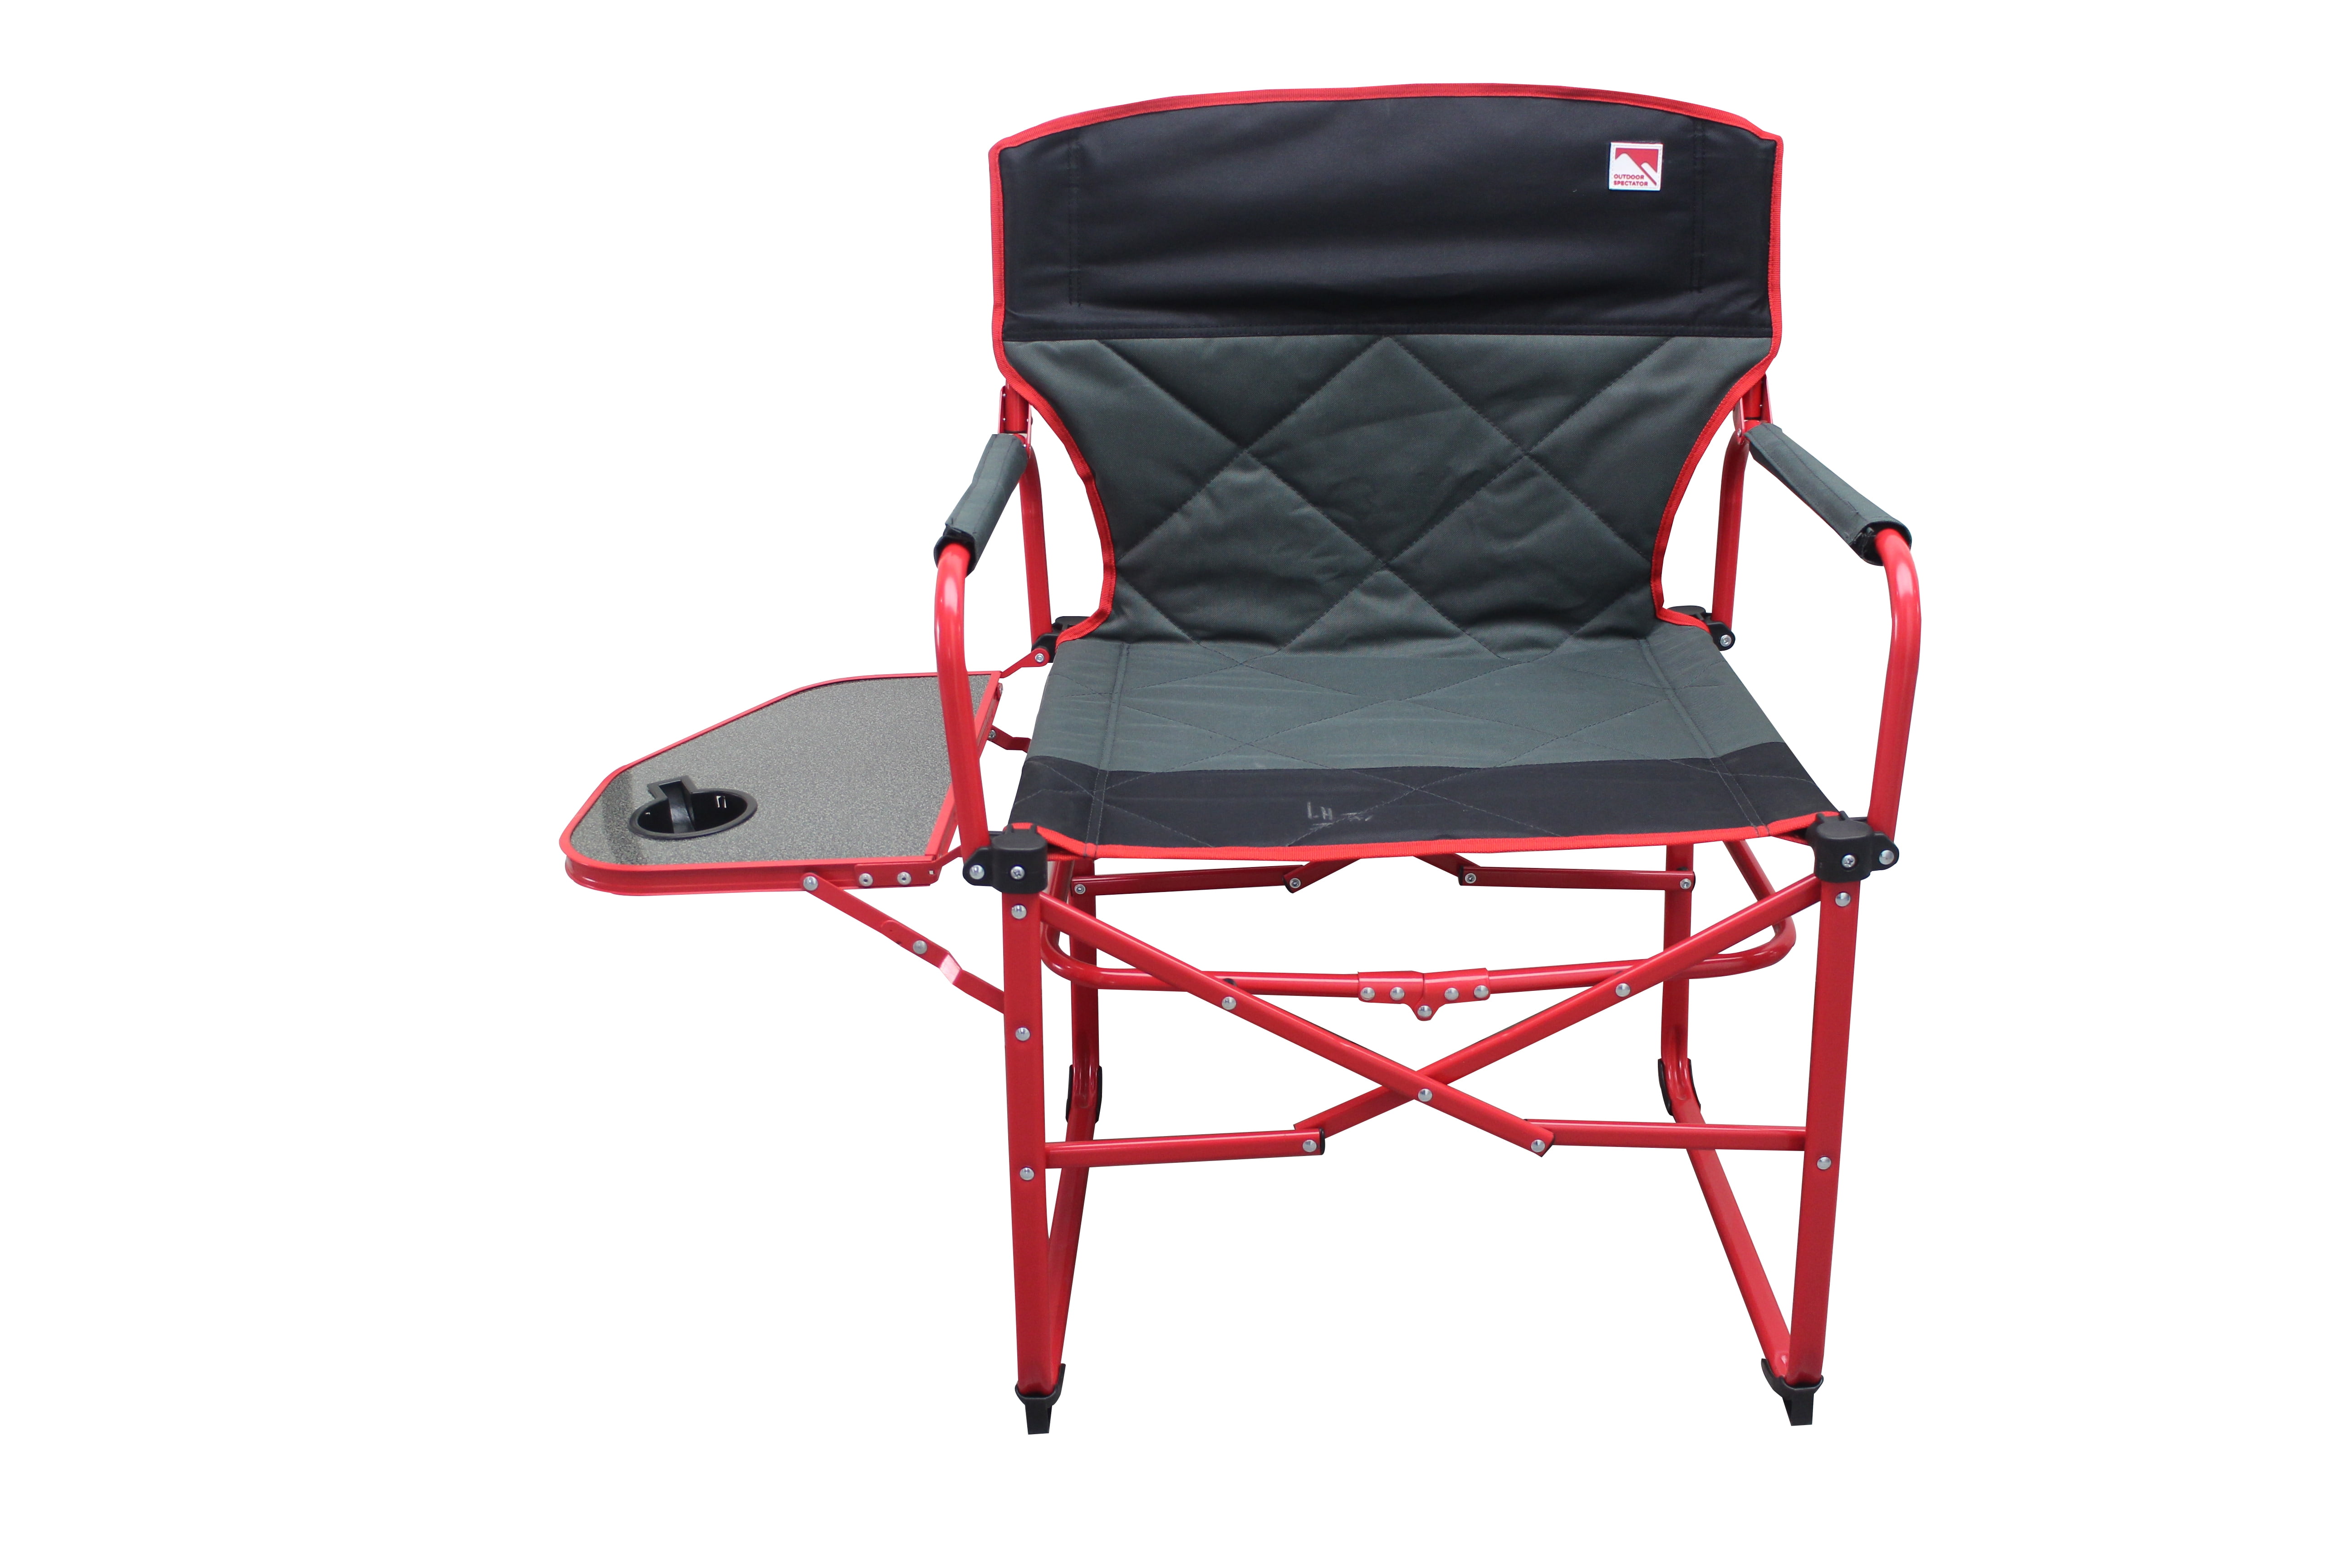 Outdoor Spectator Camping Chair, Gray - Walmart.com - Walmart.com